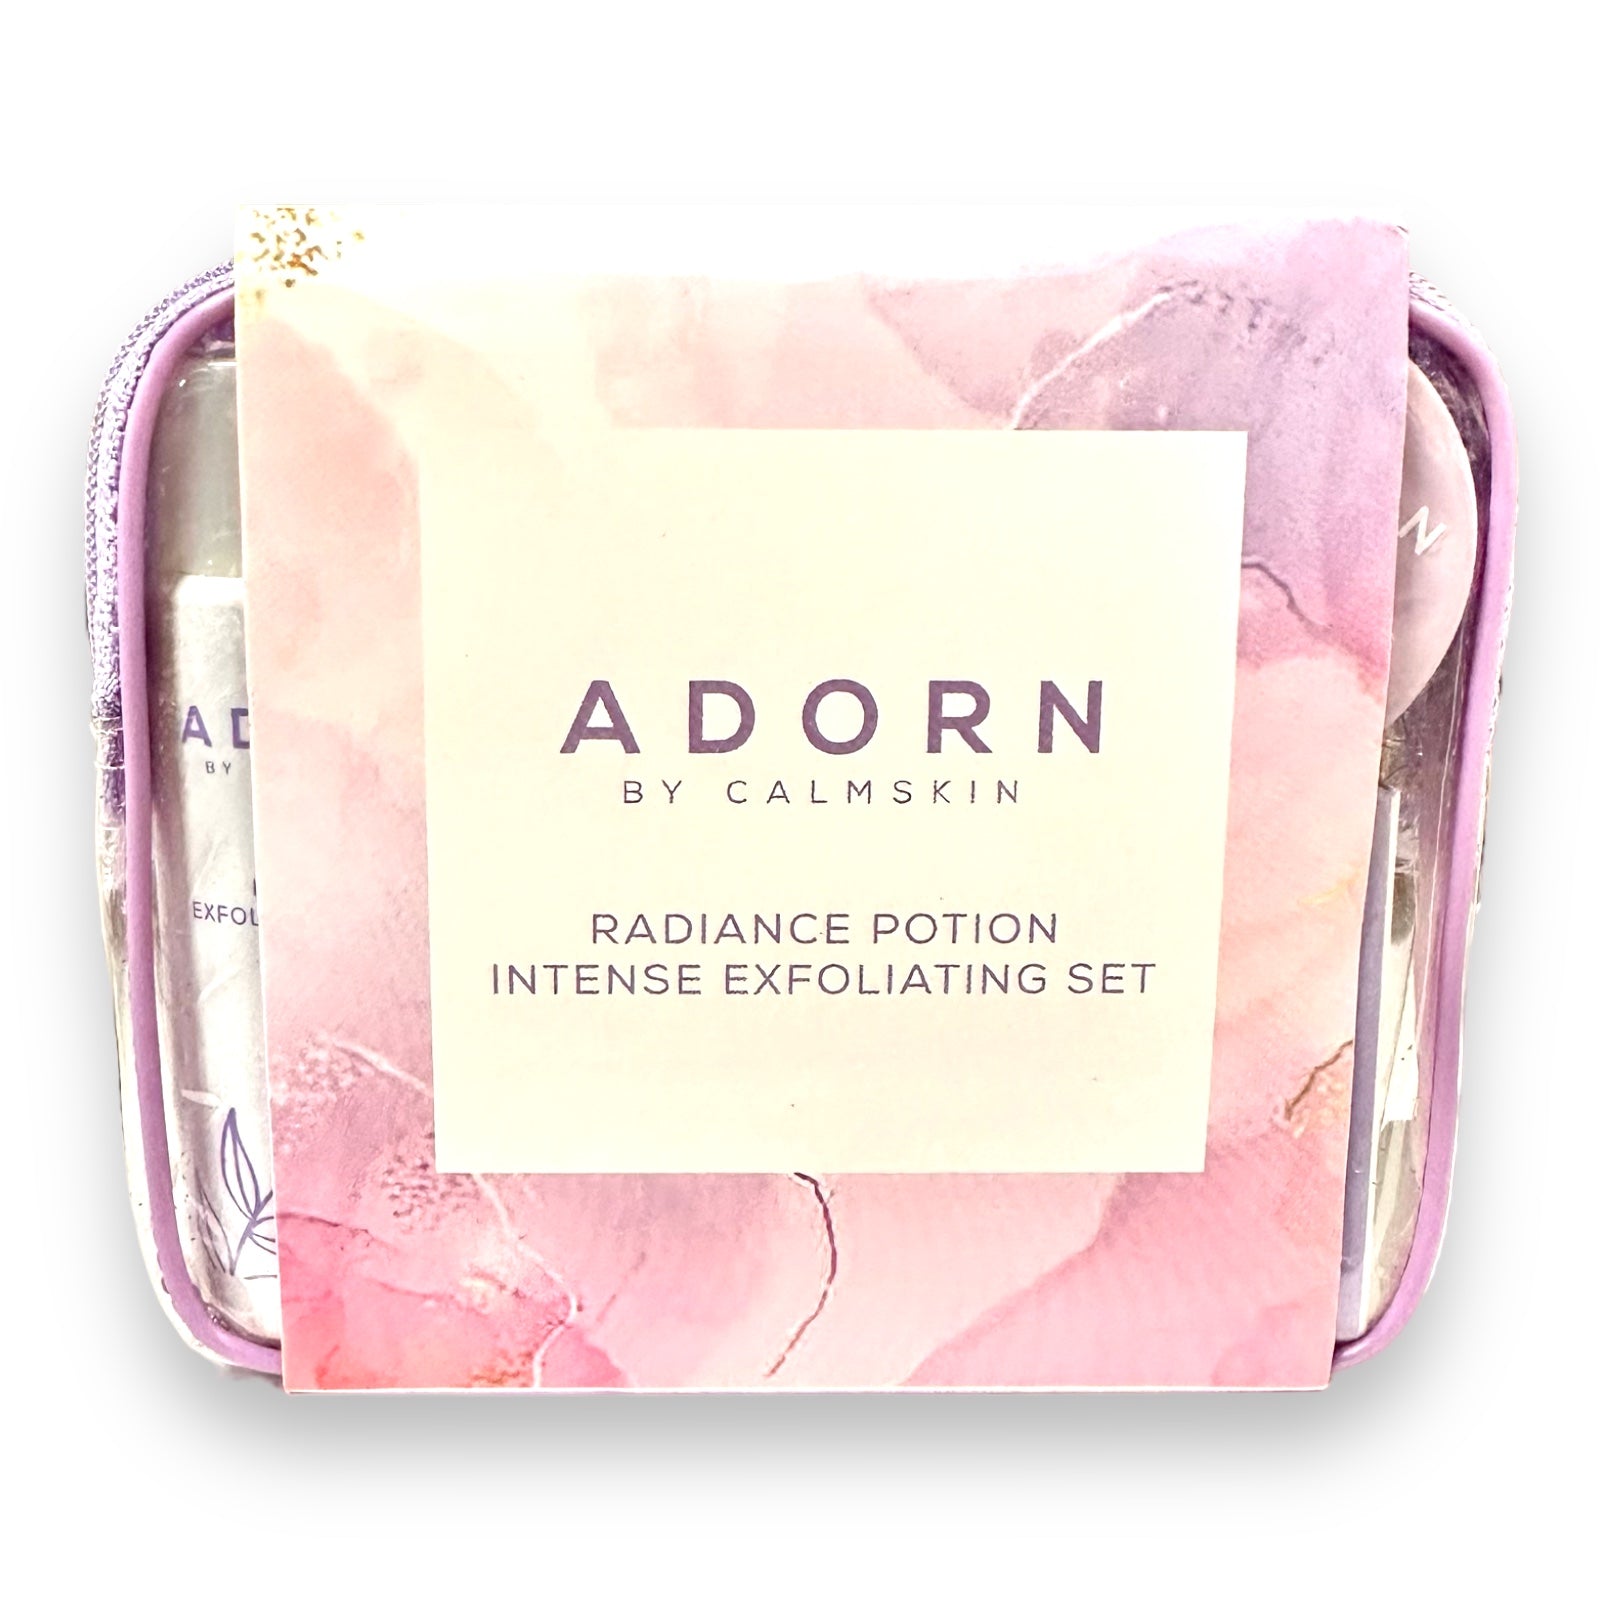 ADORN - Radiance Potion Intense Exfoliating Set